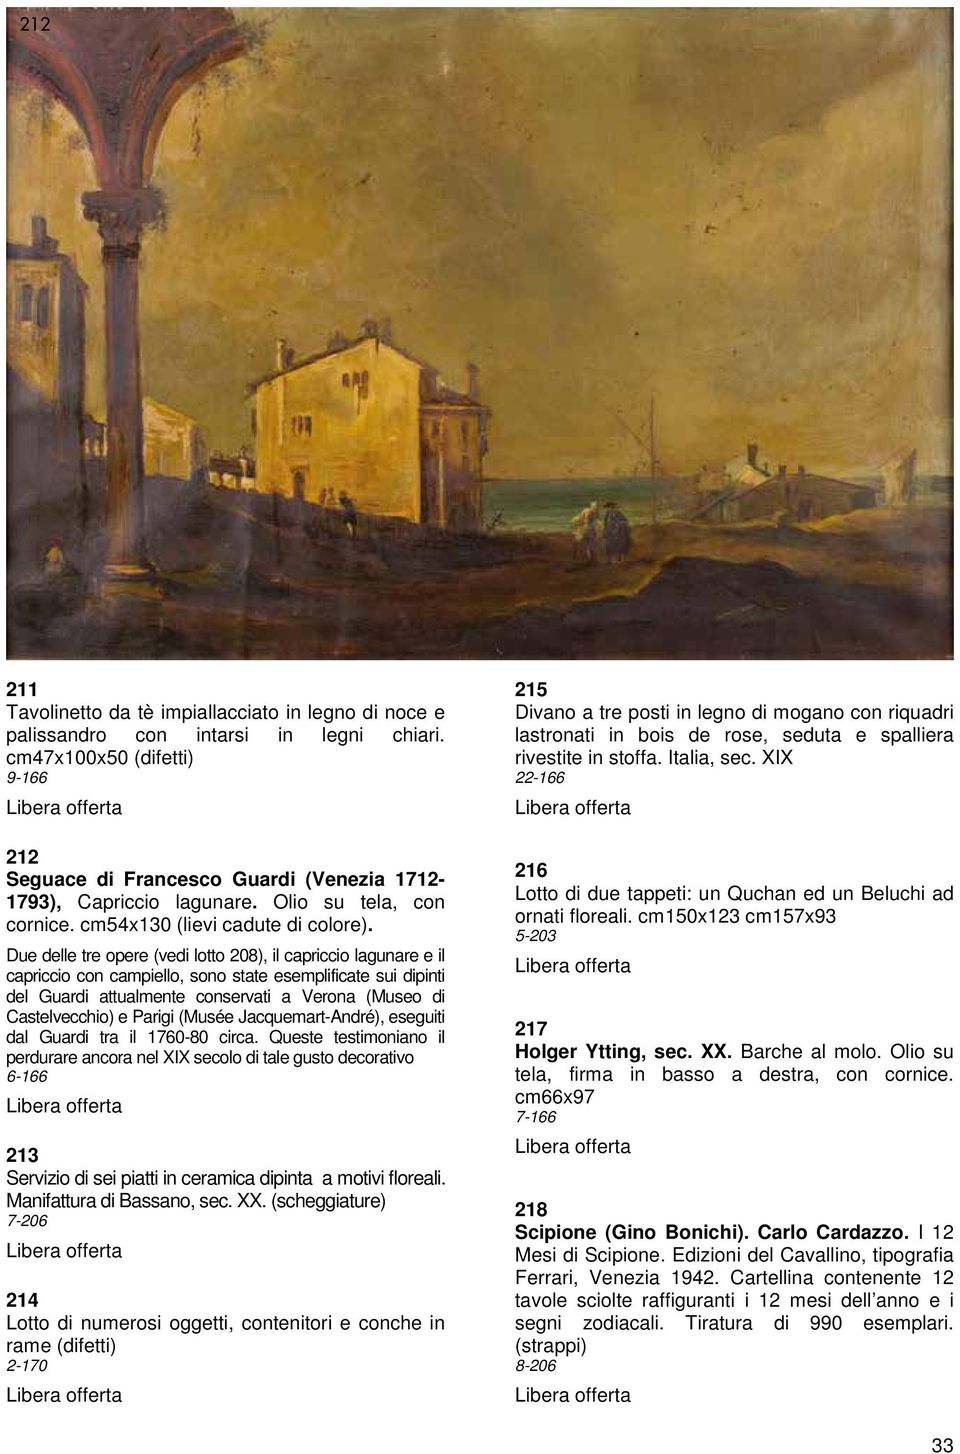 Due delle tre opere (vedi lotto 208), il capriccio lagunare e il capriccio con campiello, sono state esemplificate sui dipinti del Guardi attualmente conservati a Verona (Museo di Castelvecchio) e